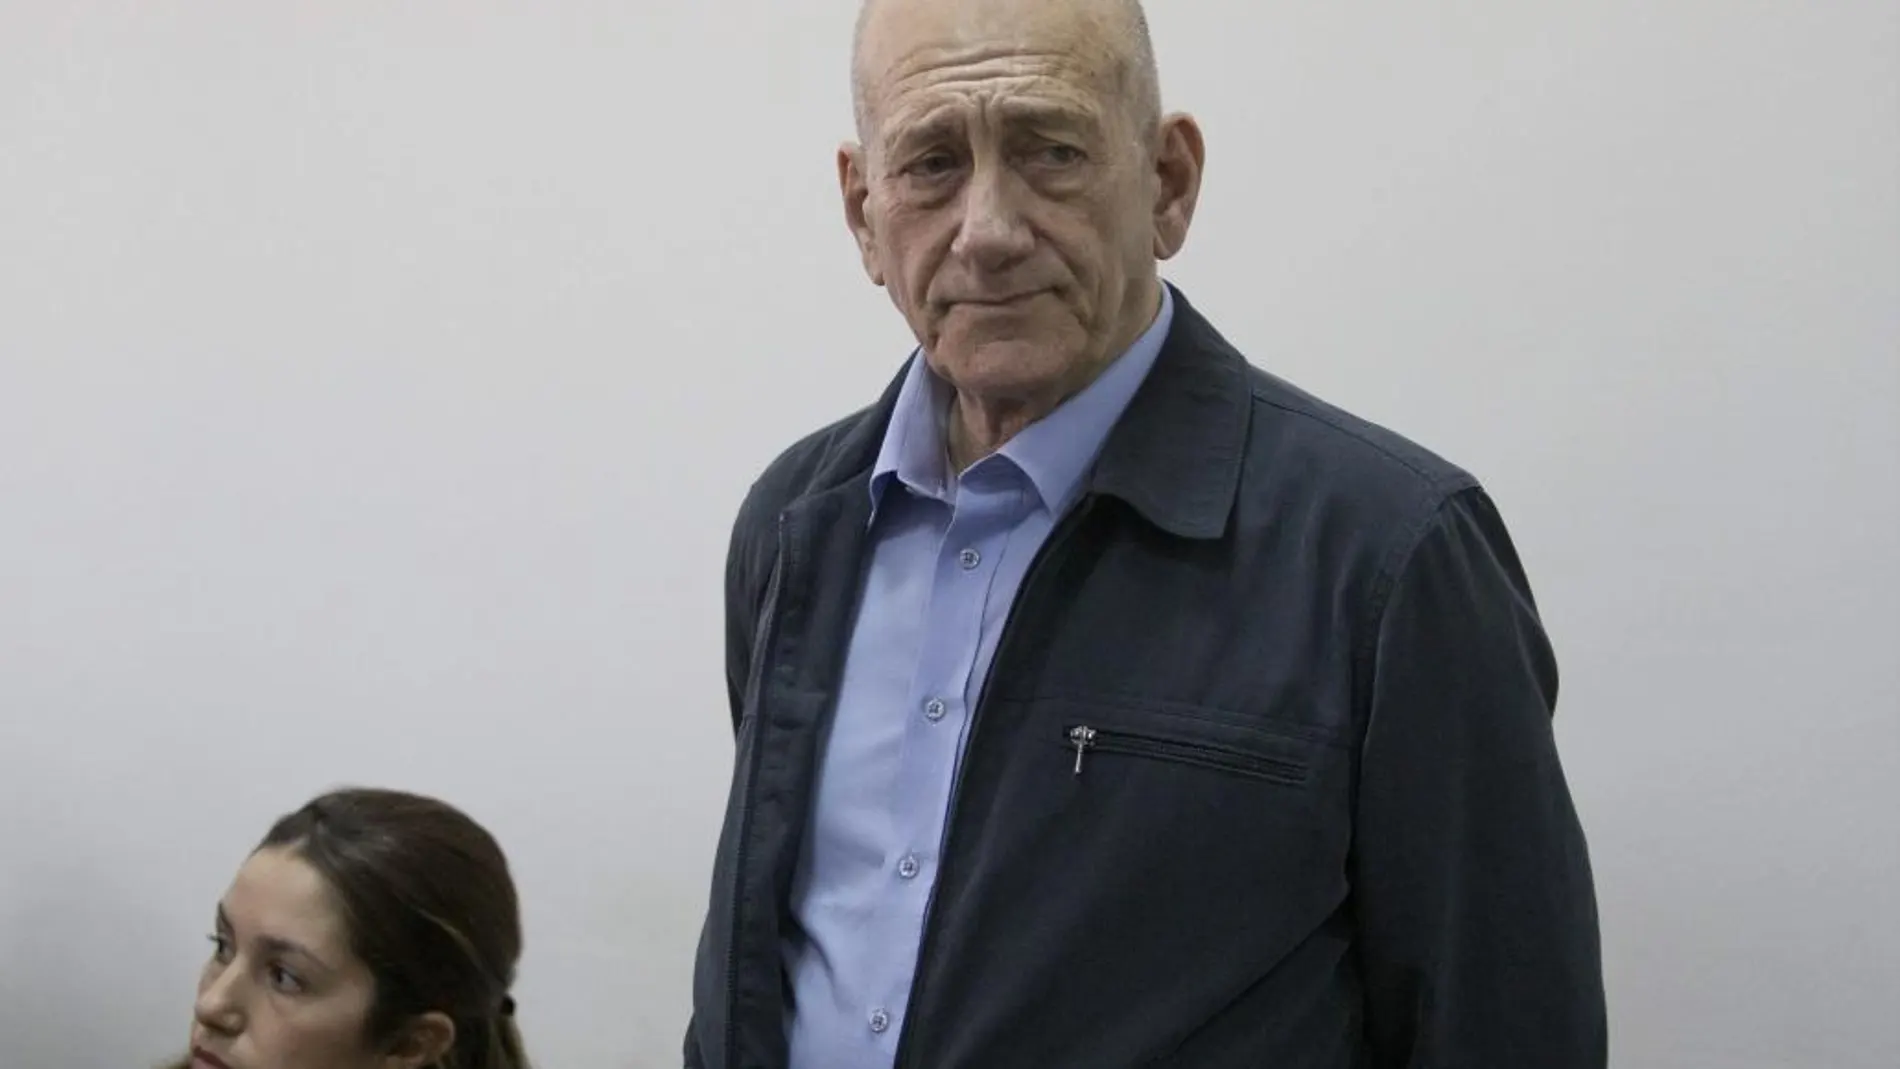 El ex primer ministro israelí Ehud Olmert en los juzgados de Jerusalén (Israel) el pasado 30 de marzo